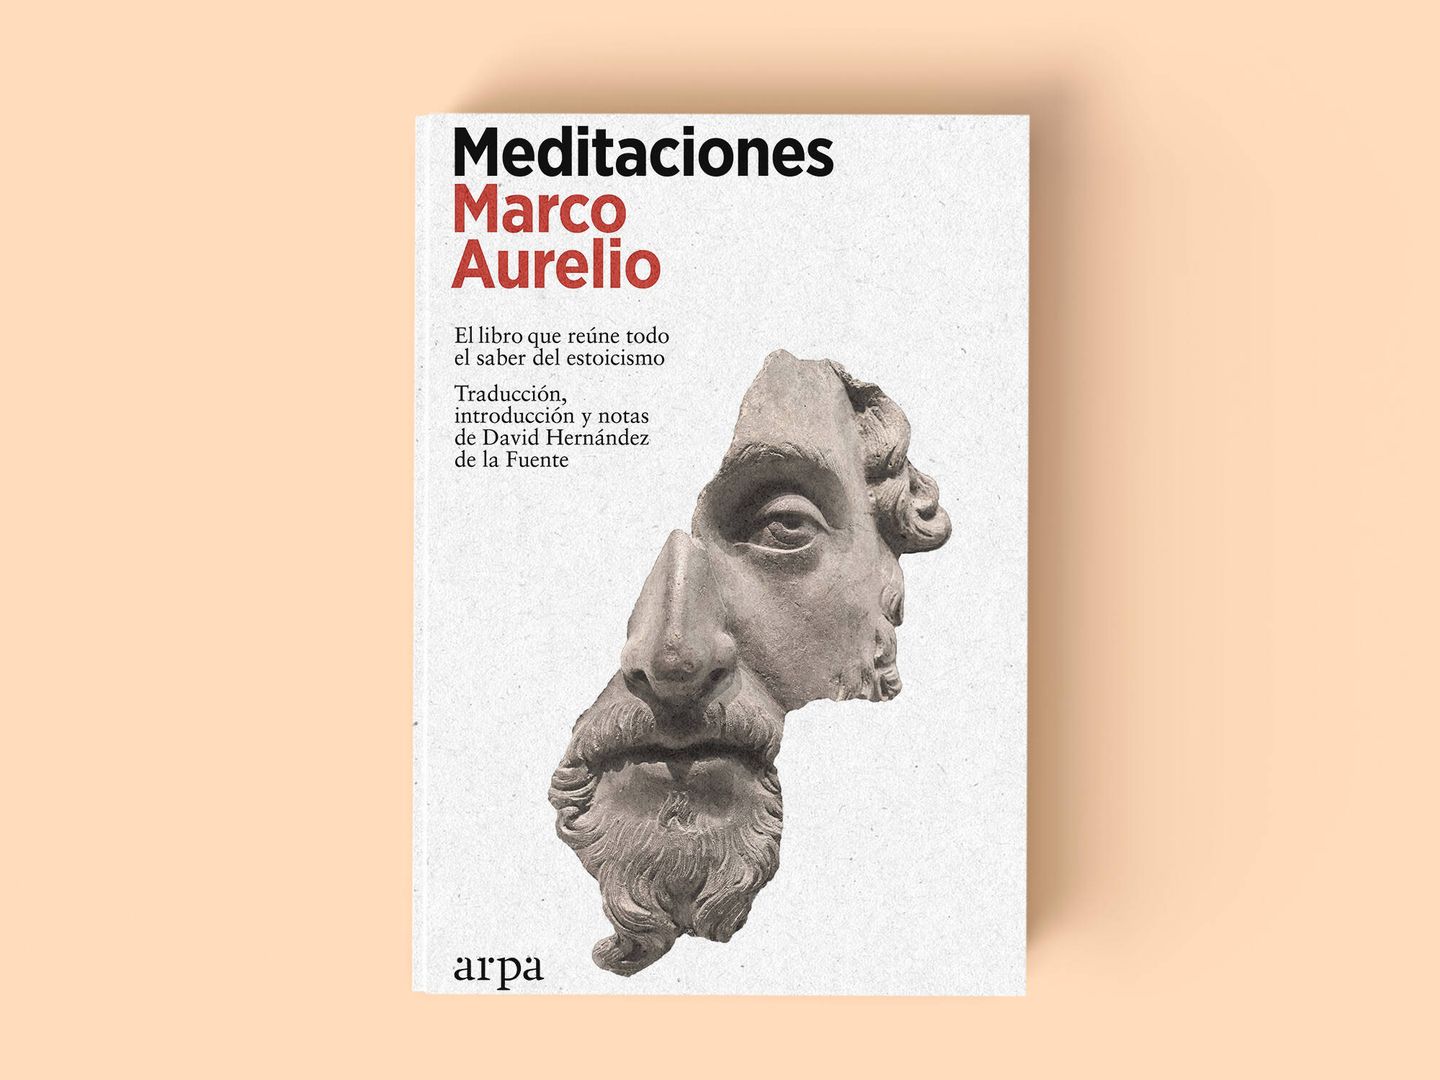 Edición de 'Meditaciones' de Marco Aurelio, con introducción de David Hernández de la Fuente. 